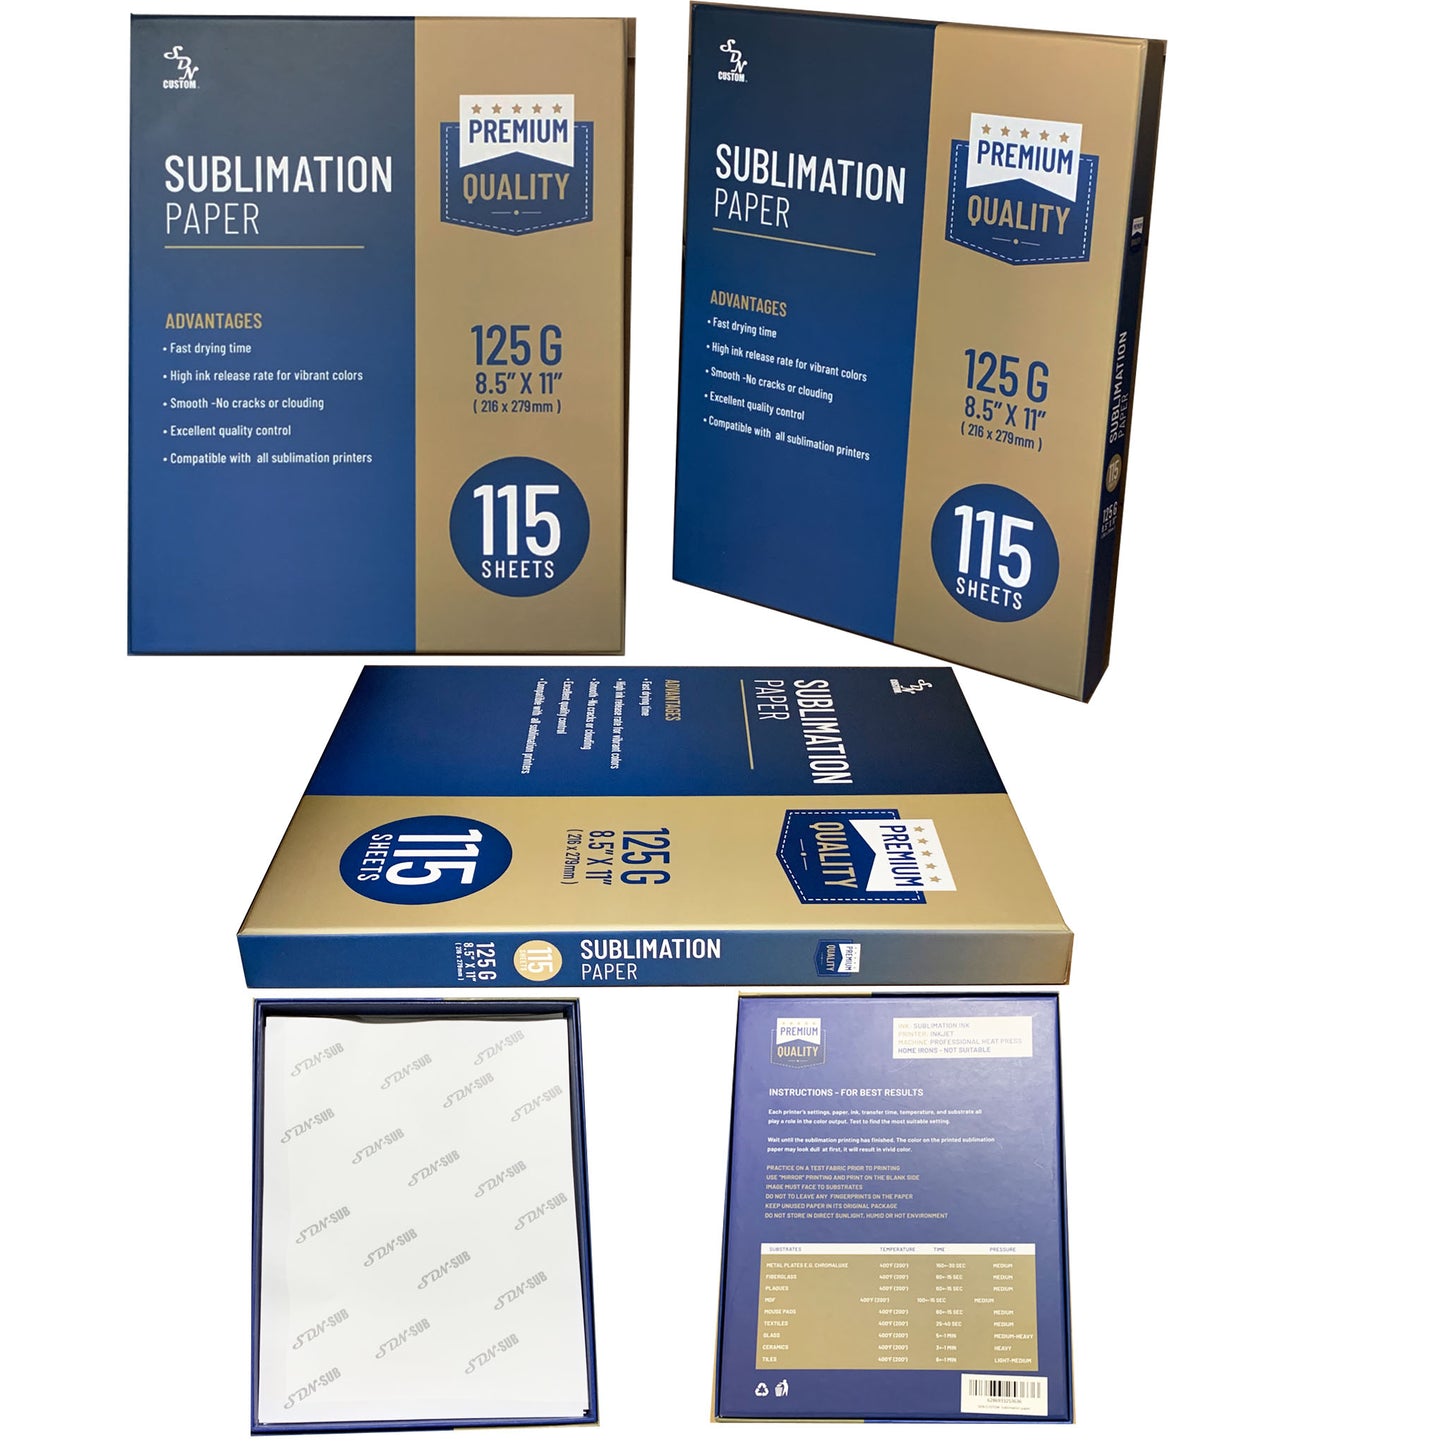 Sublimation Paper 125g 115 Sheets - Premium Quality(8.5 X 11)